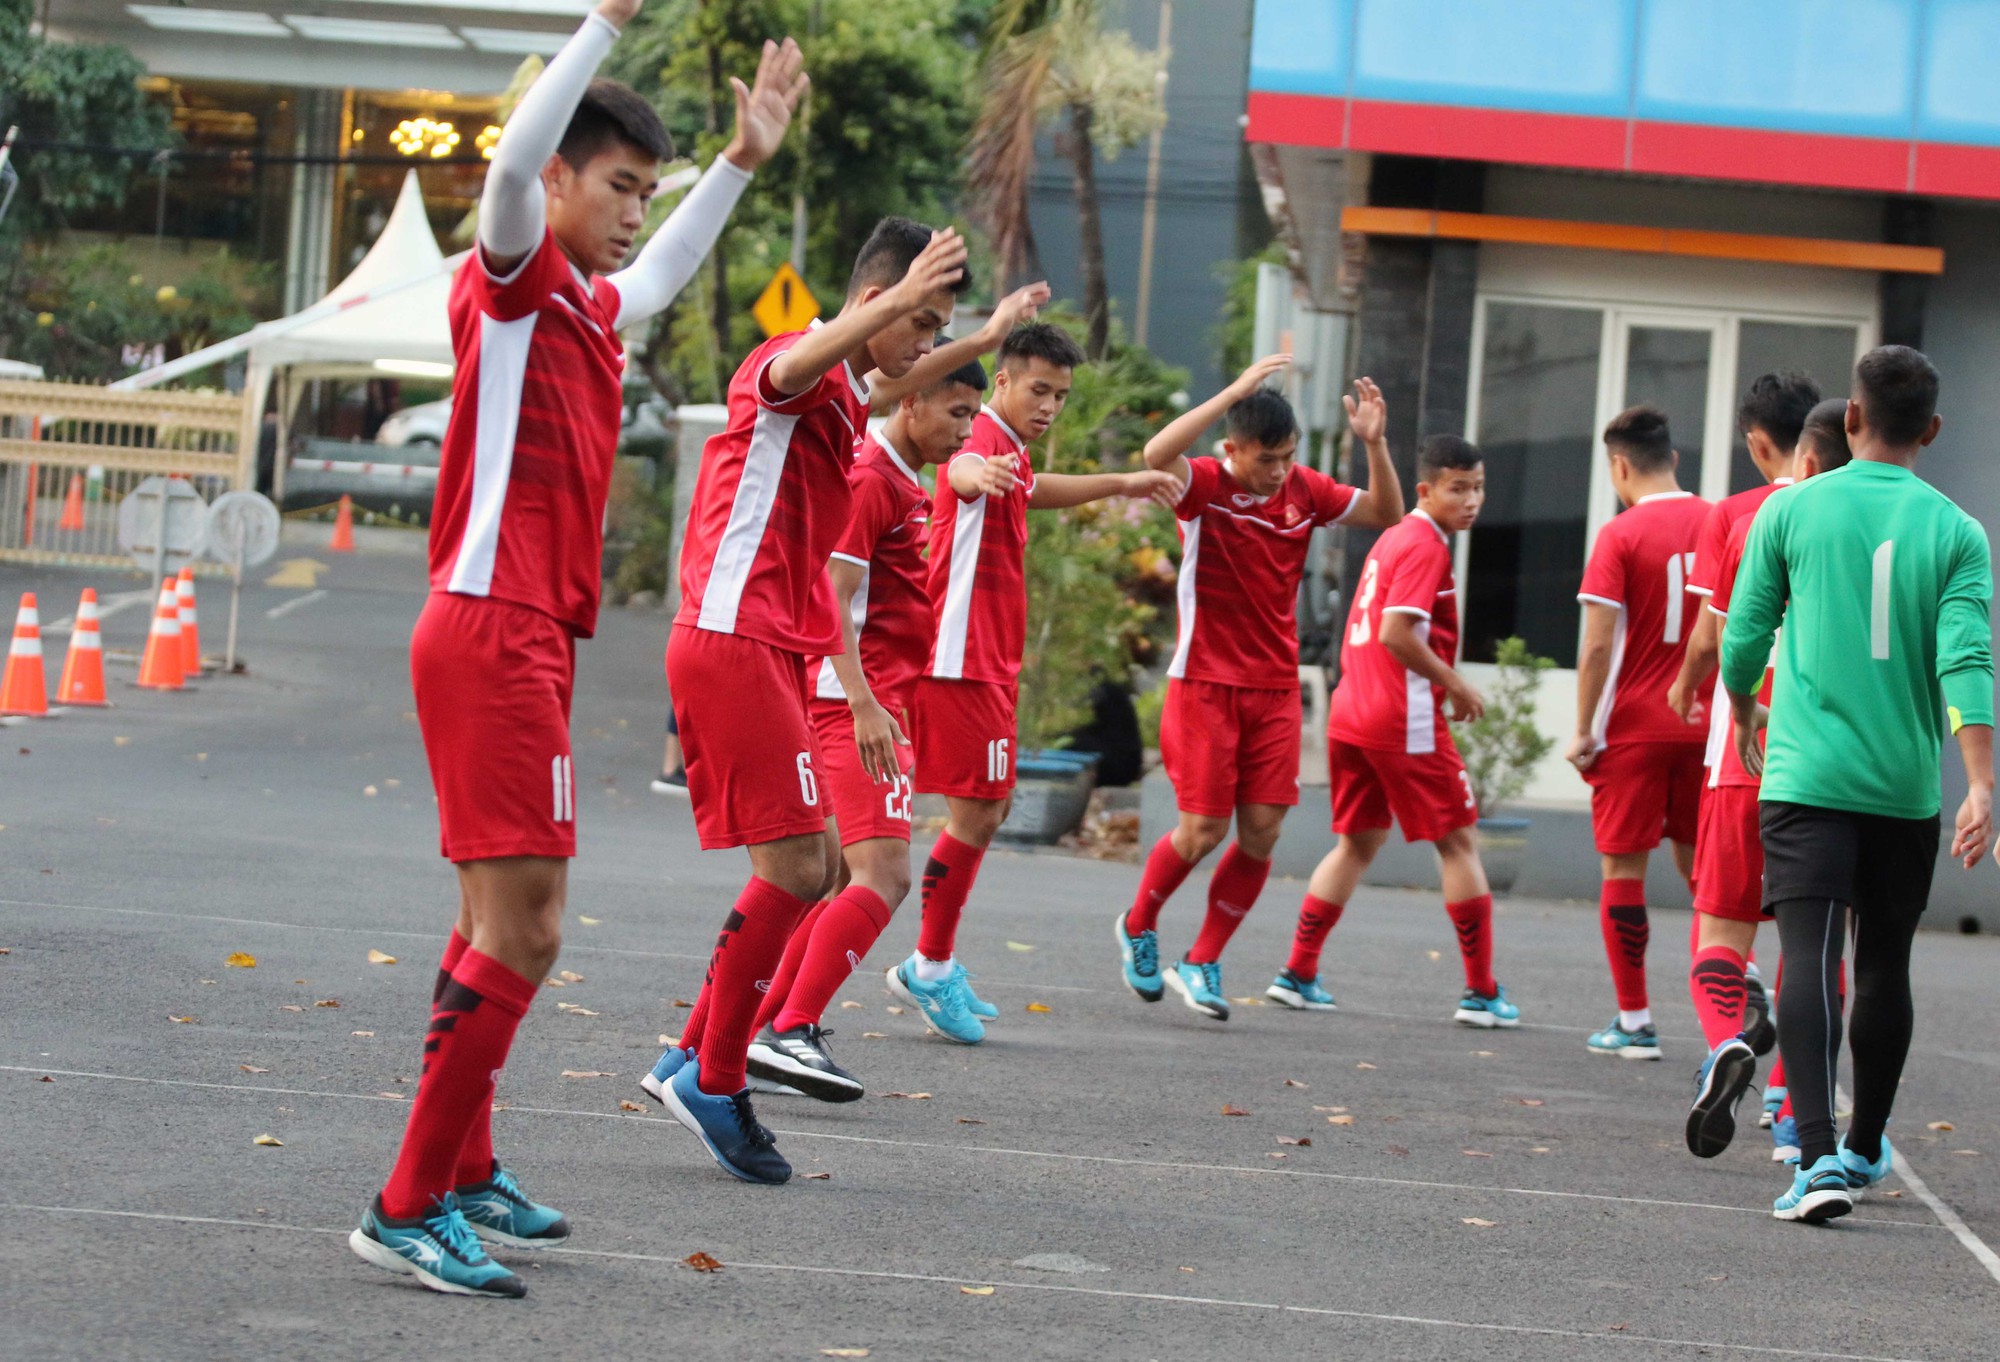 HLV Hoàng Anh Tuấn tuyên bố sẽ loại những tuyển thủ U19 thiếu khát vọng  - Ảnh 2.